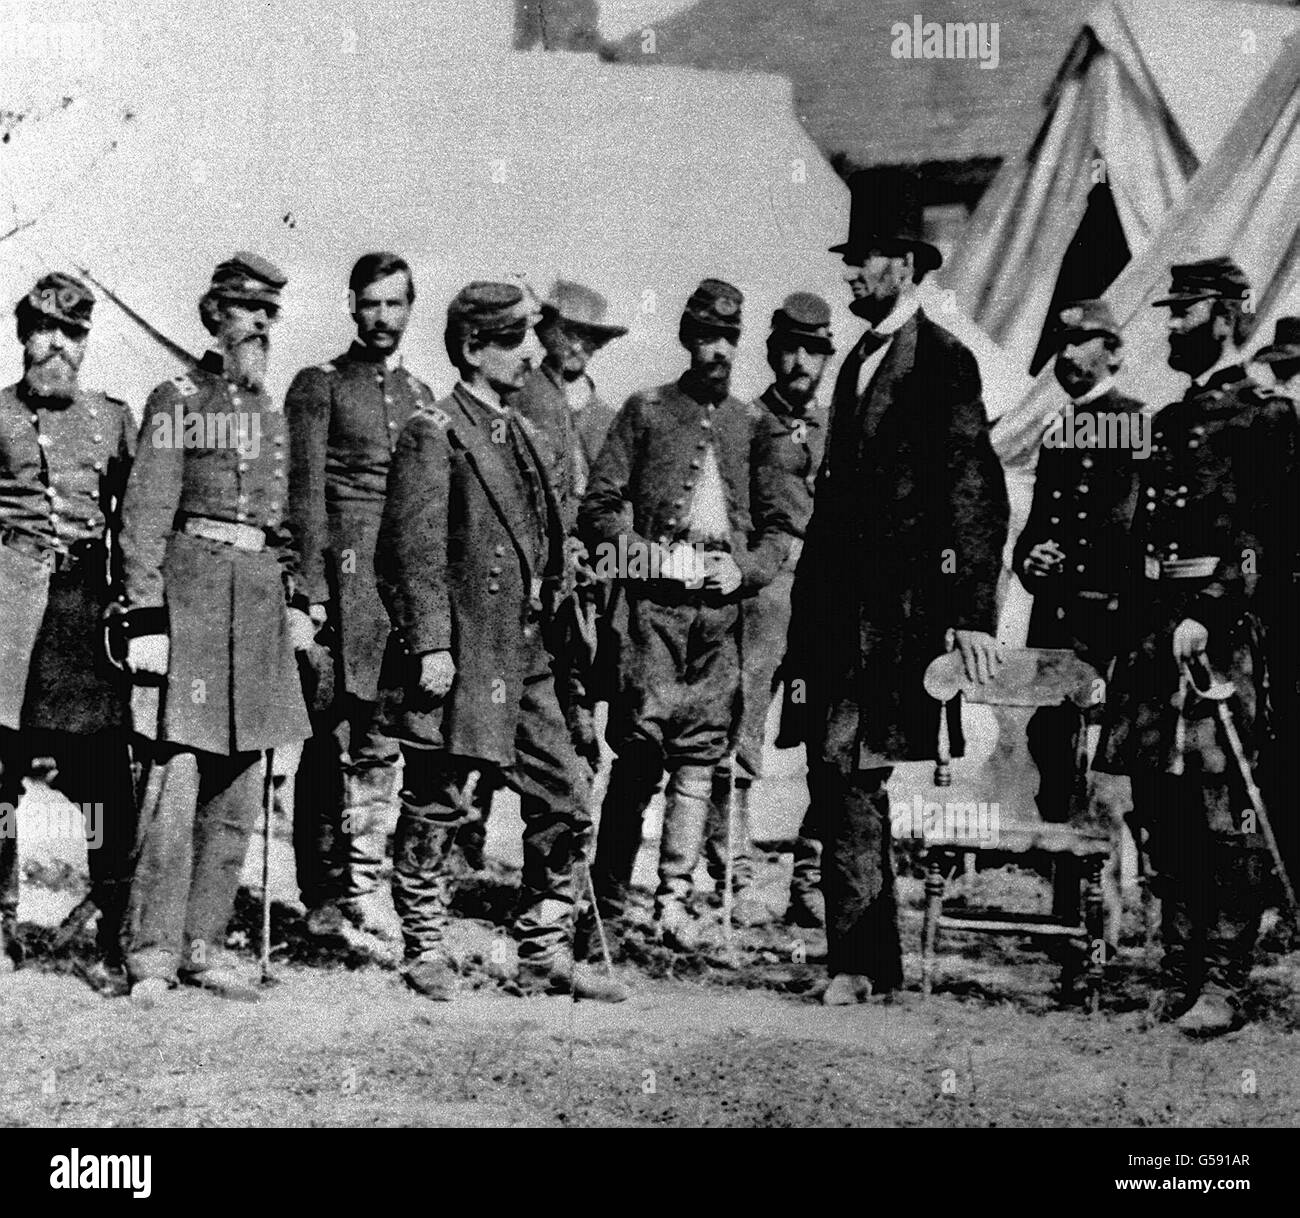 6. DEZEMBER: Präsident Lincoln gibt die Emanzipationsprämierung aus, die schwarzen Sklaven ihre Freiheit gibt. US-Präsident Abraham Lincoln (3. Rechts, Hut) sprach während des amerikanischen Bürgerkrieges mit einigen Kavallerieoffizieren. Stockfoto